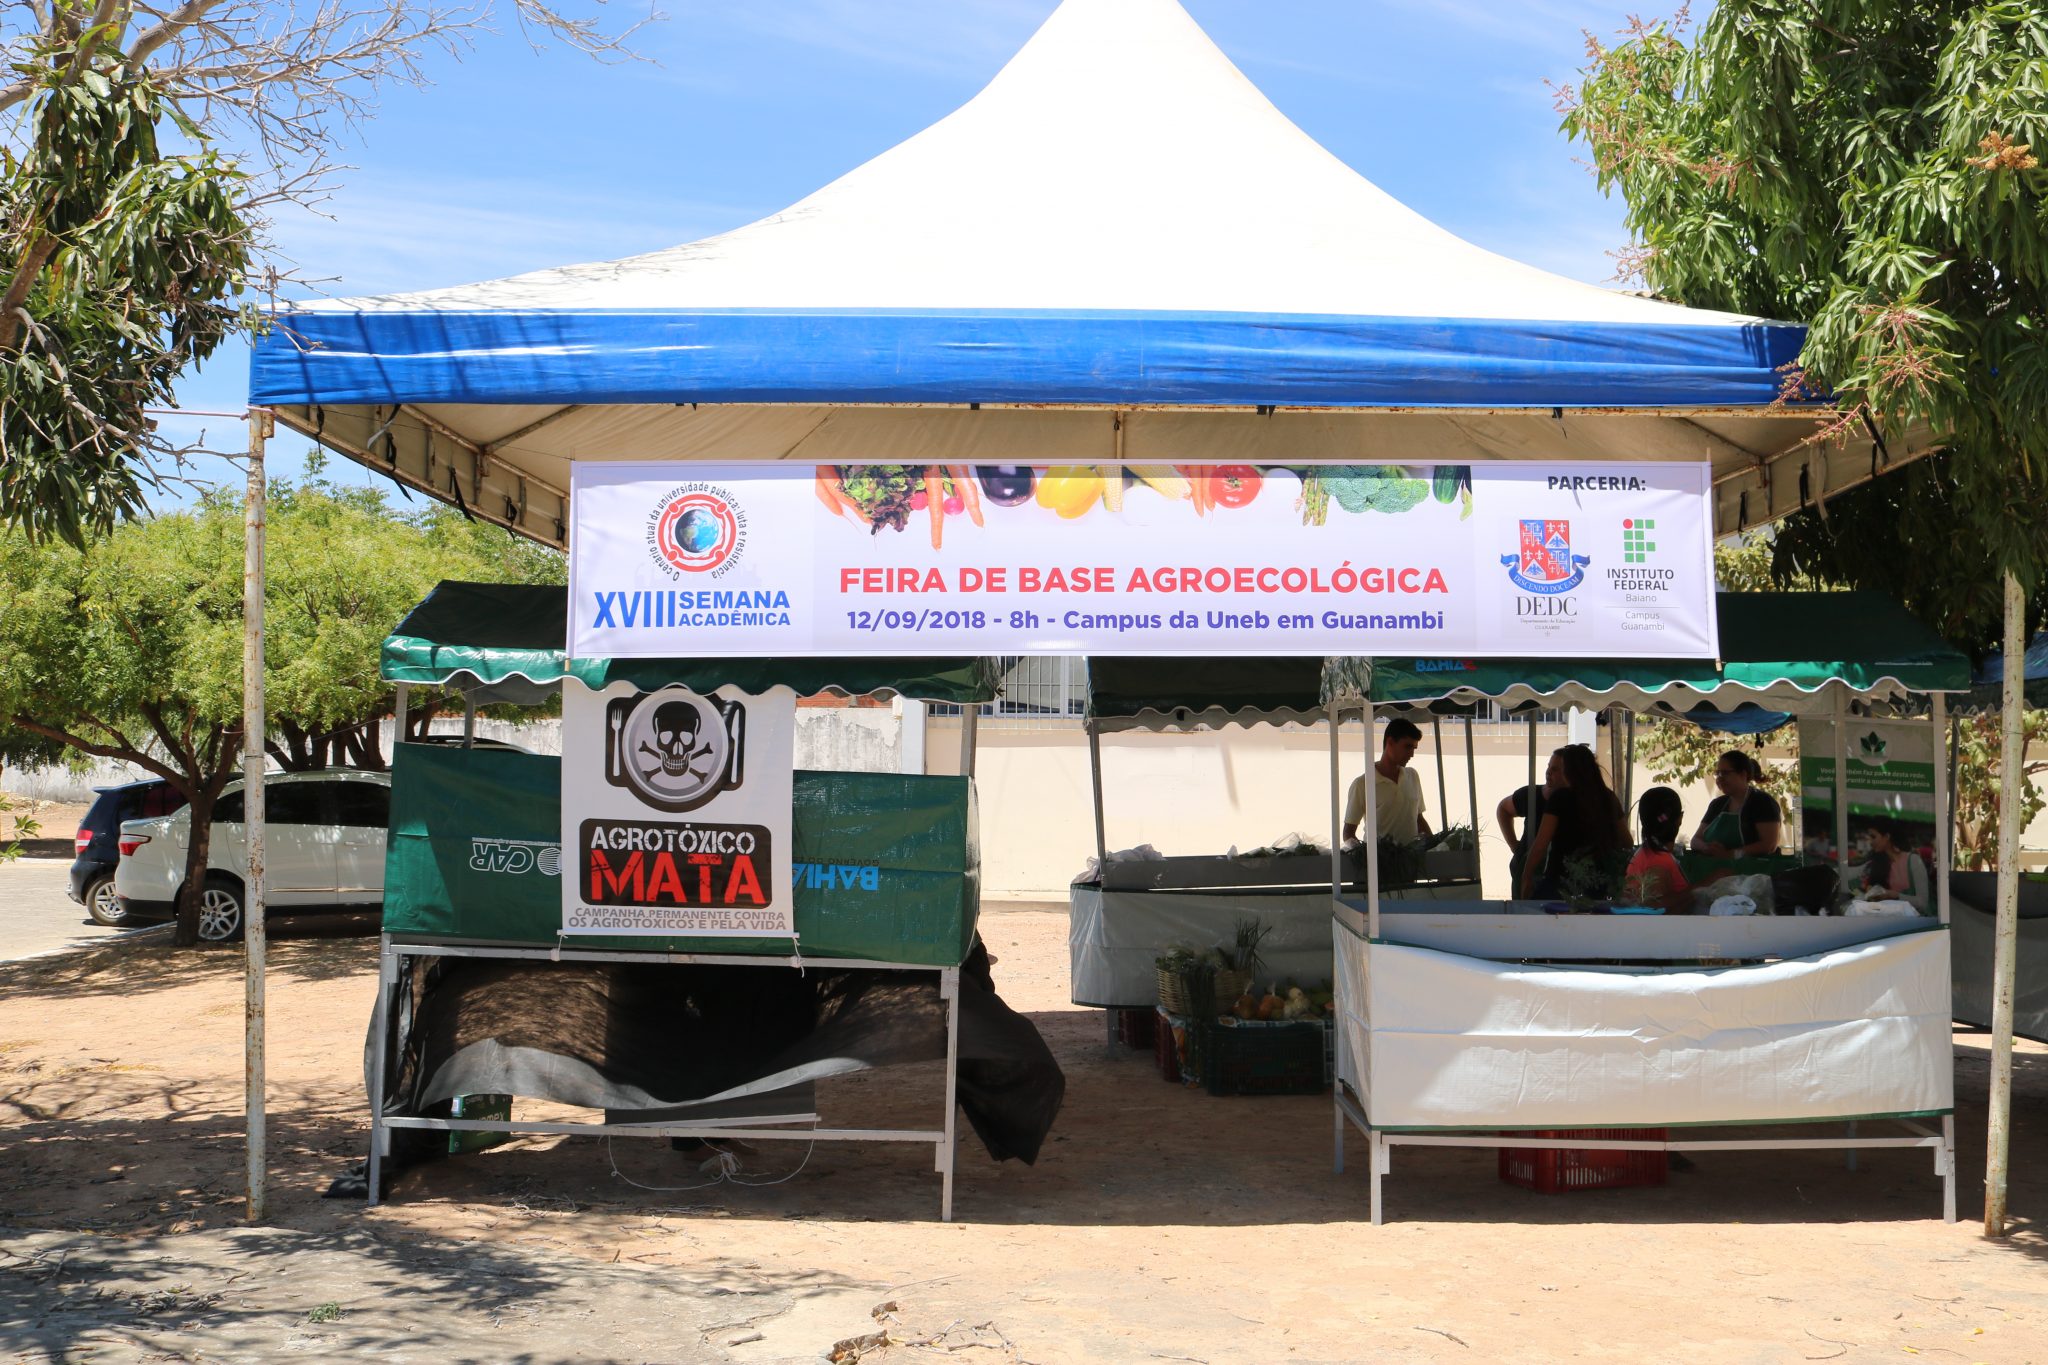 Uneb de Guanambi recebe Feira de Base Agroecológica